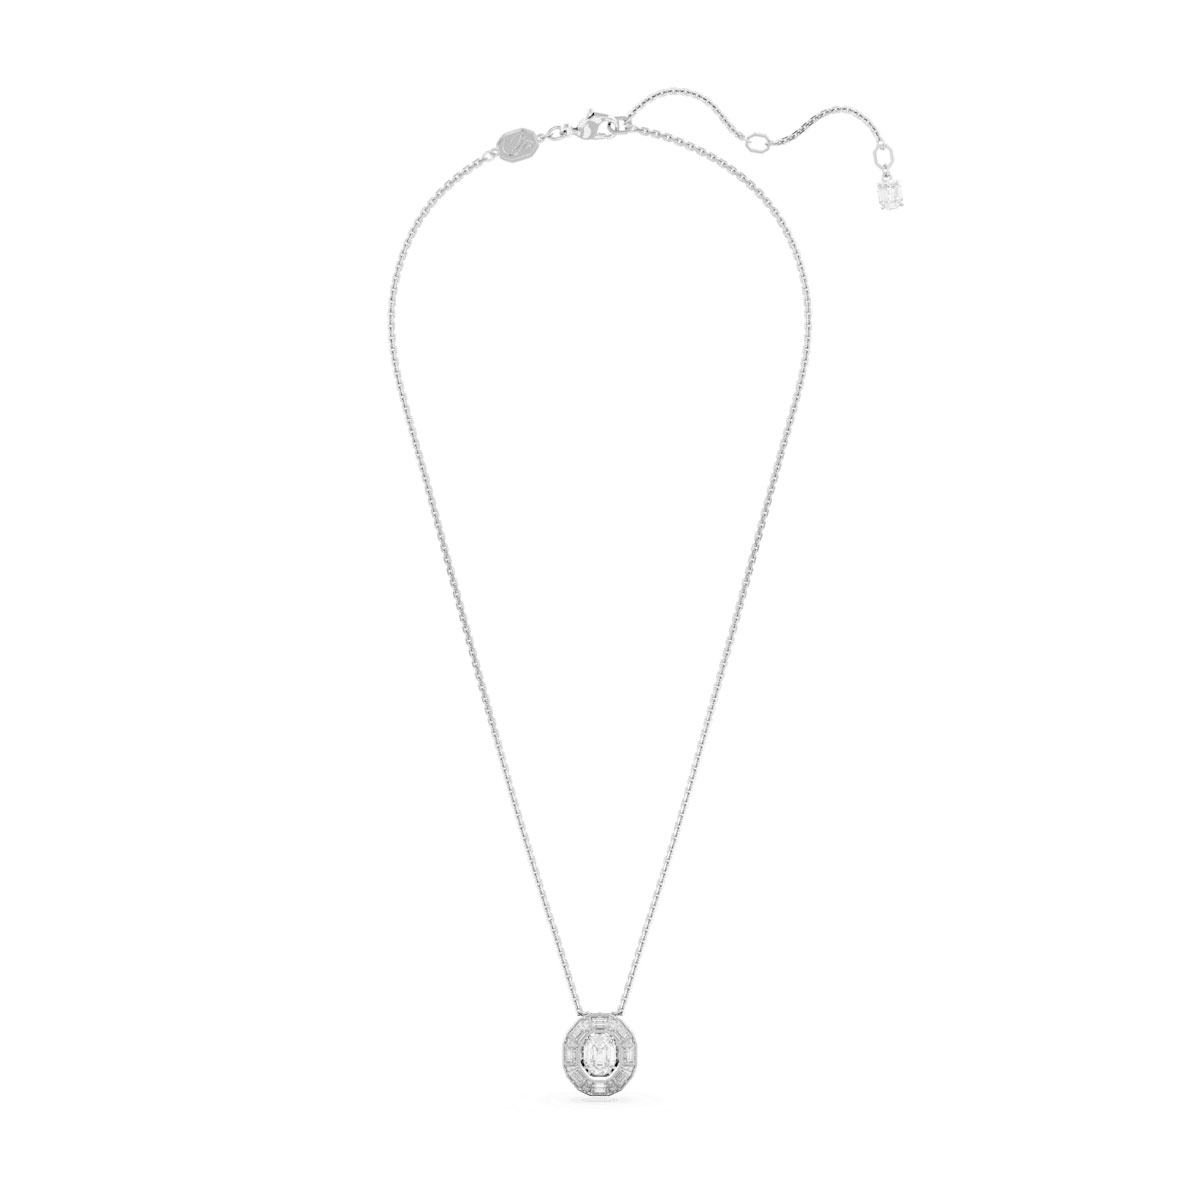 Swarovski Mesmera pendant, Octagon cut, White, Rhodium